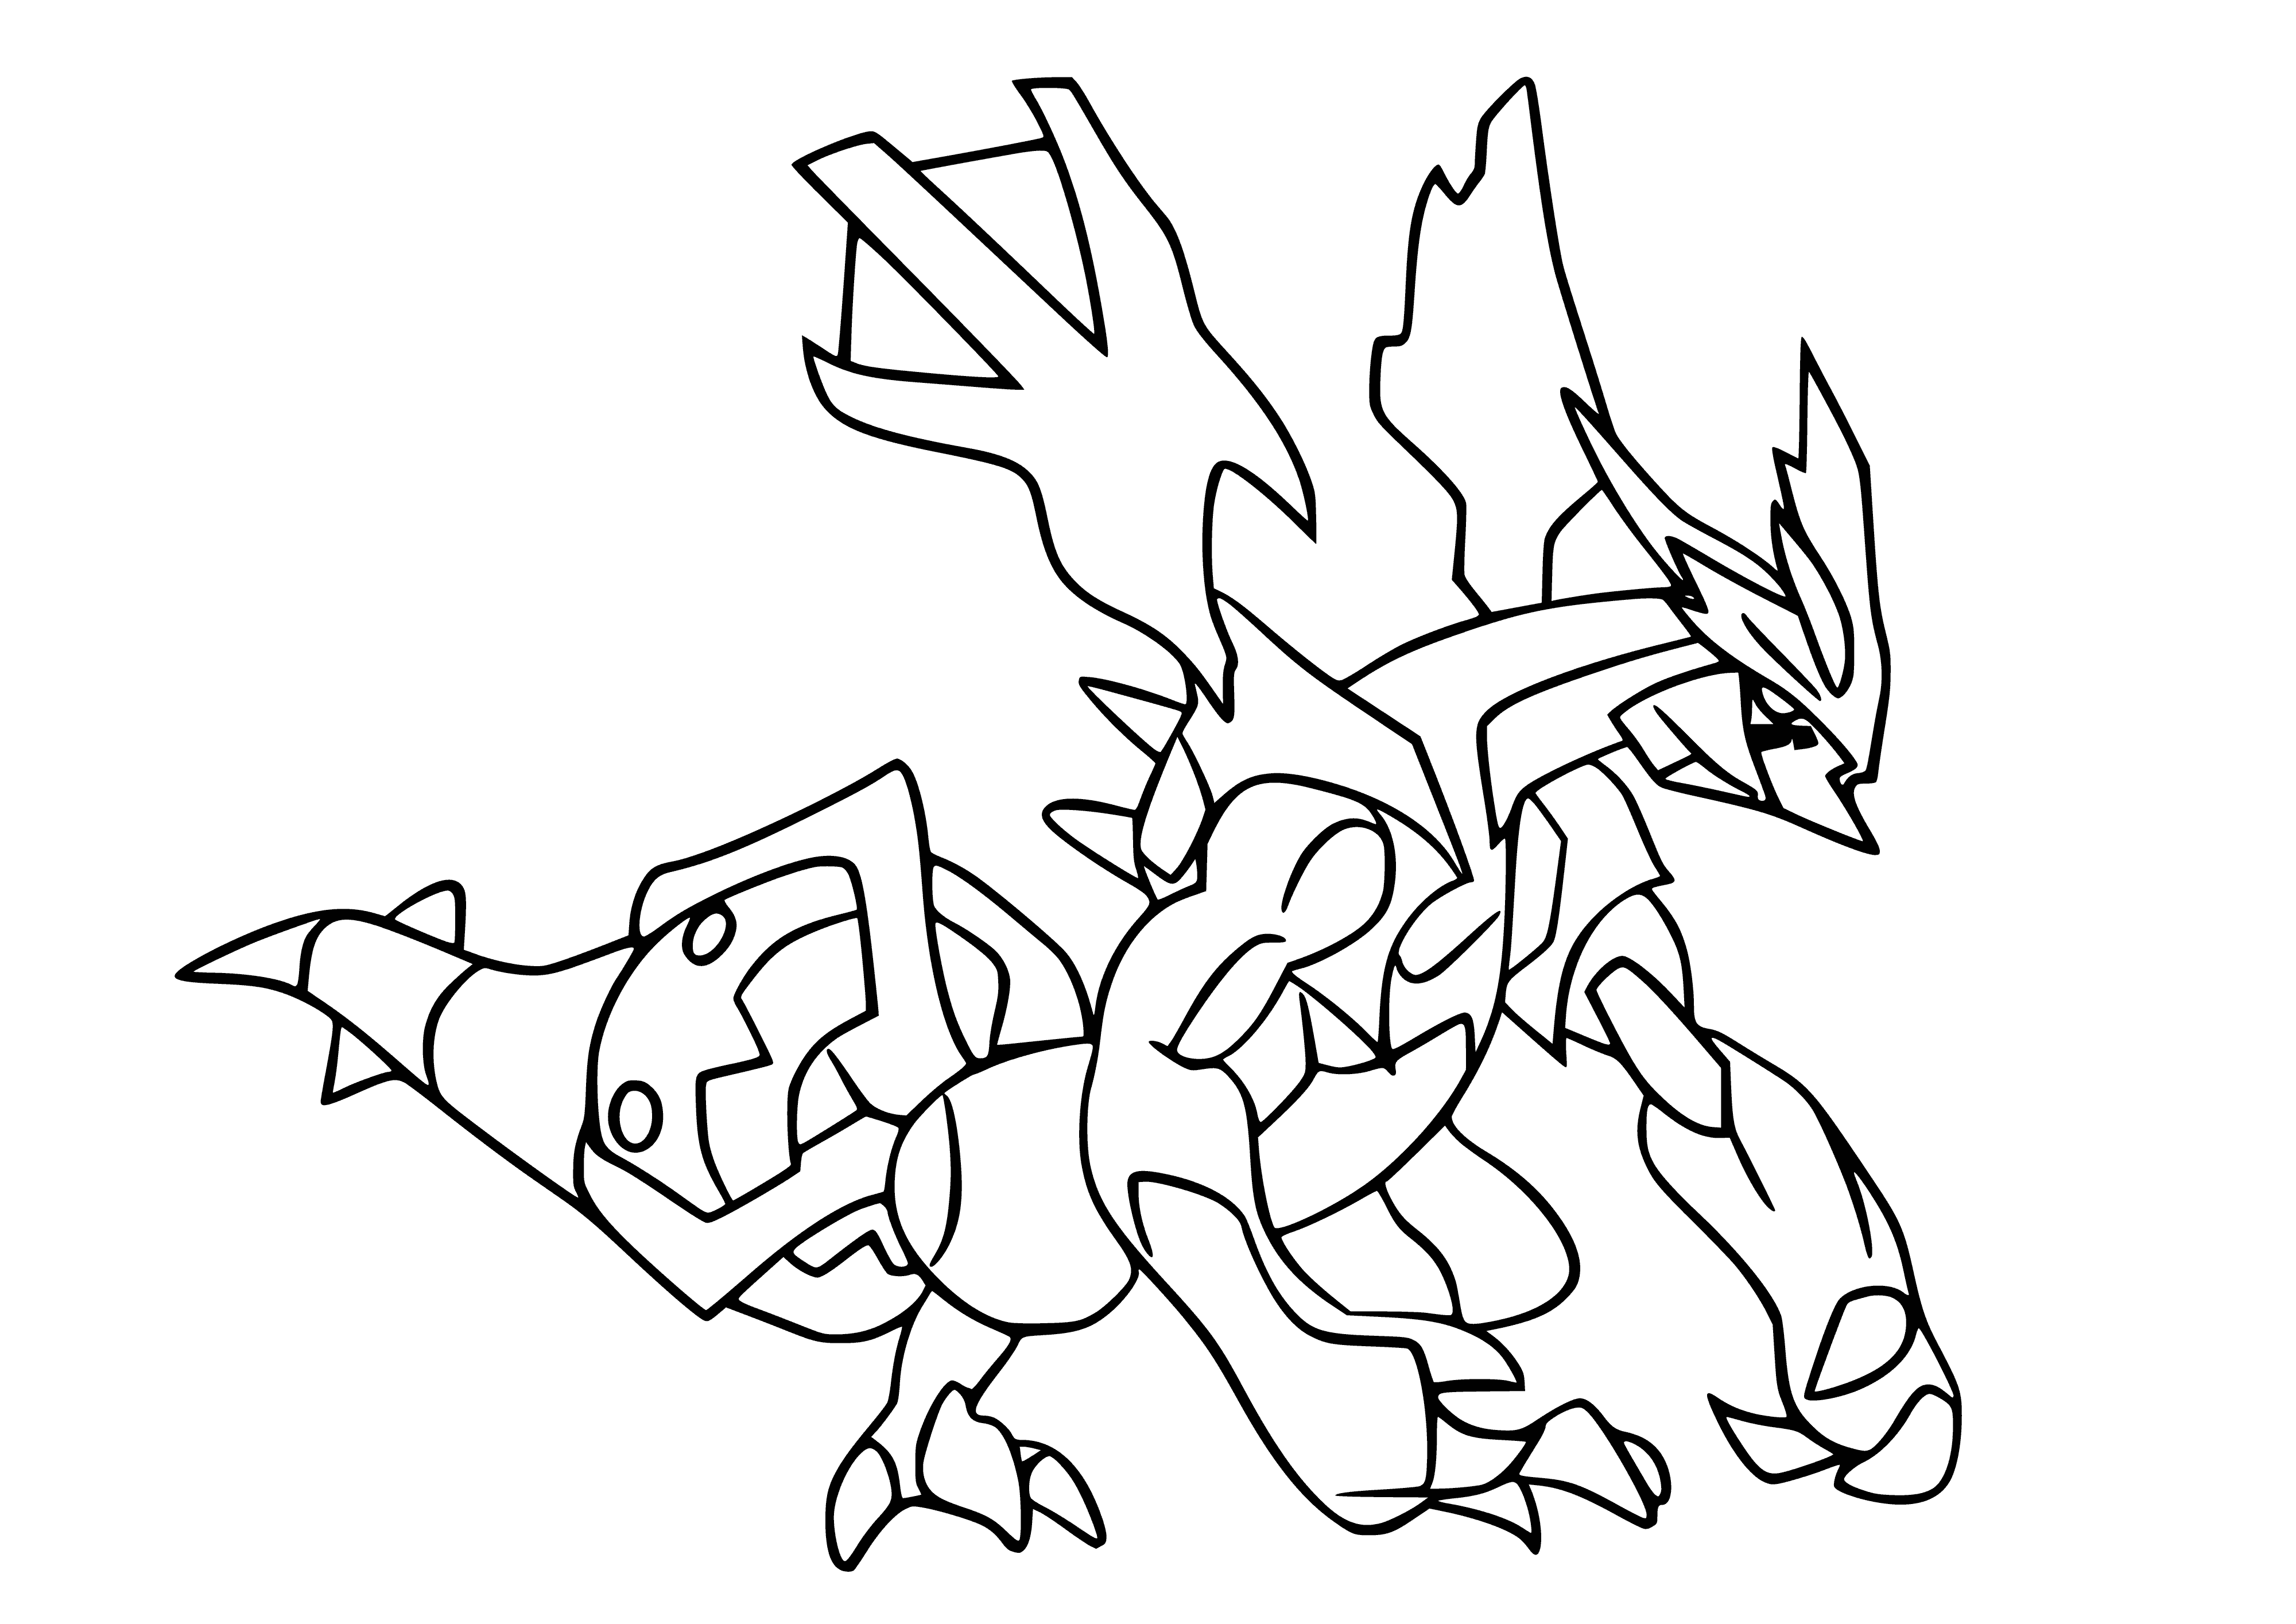 Pokémon légendaire Kyurem coloriage